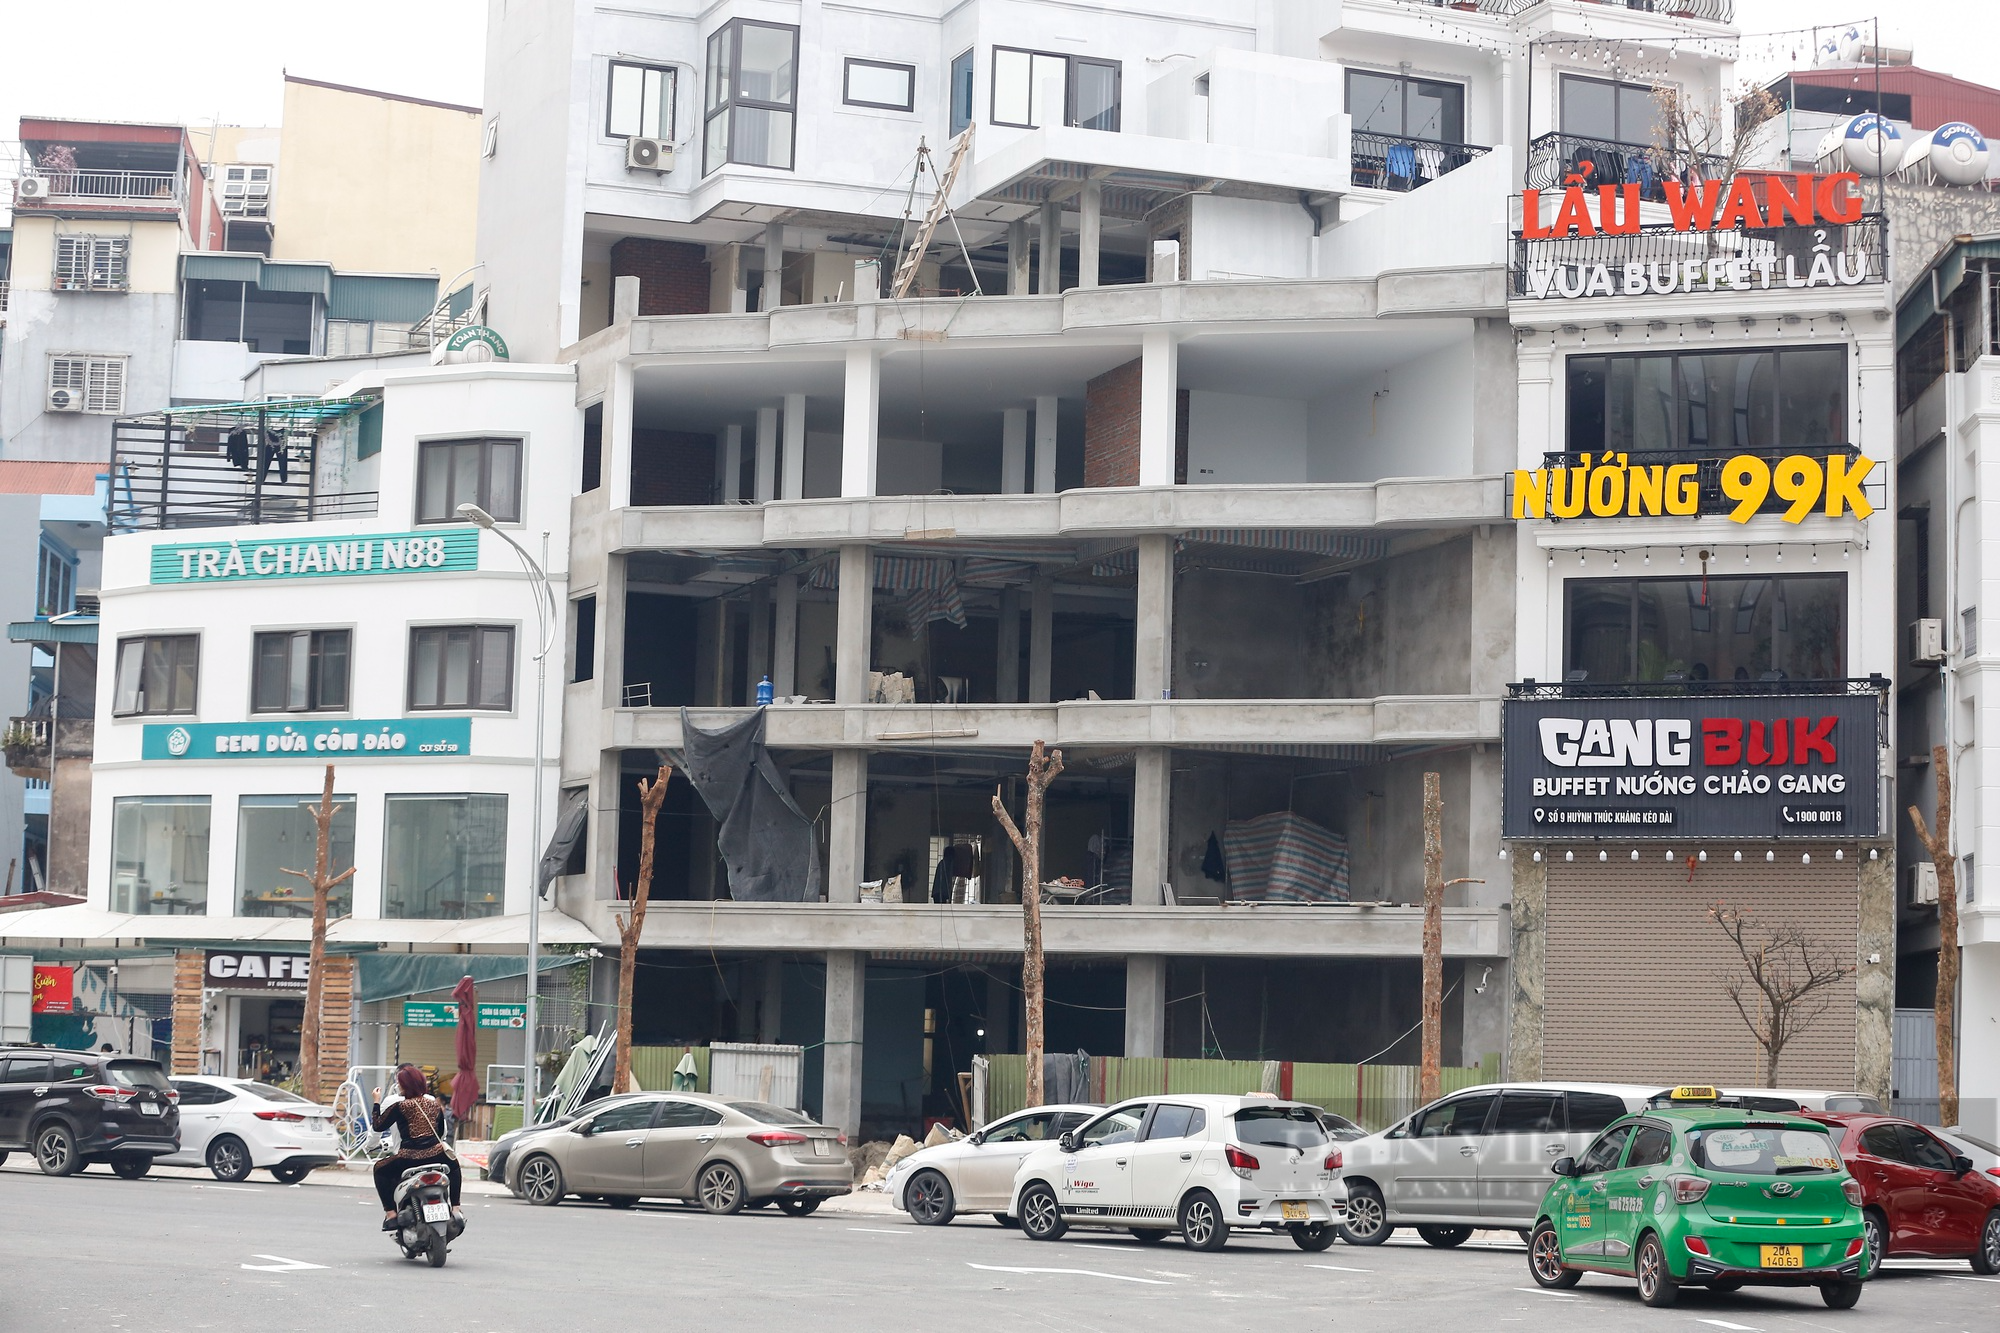 Hà Nội: Giá nhà bỗng dưng tăng vọt, người dân tất bật sửa sang nhà cửa để kinh doanh - Ảnh 2.